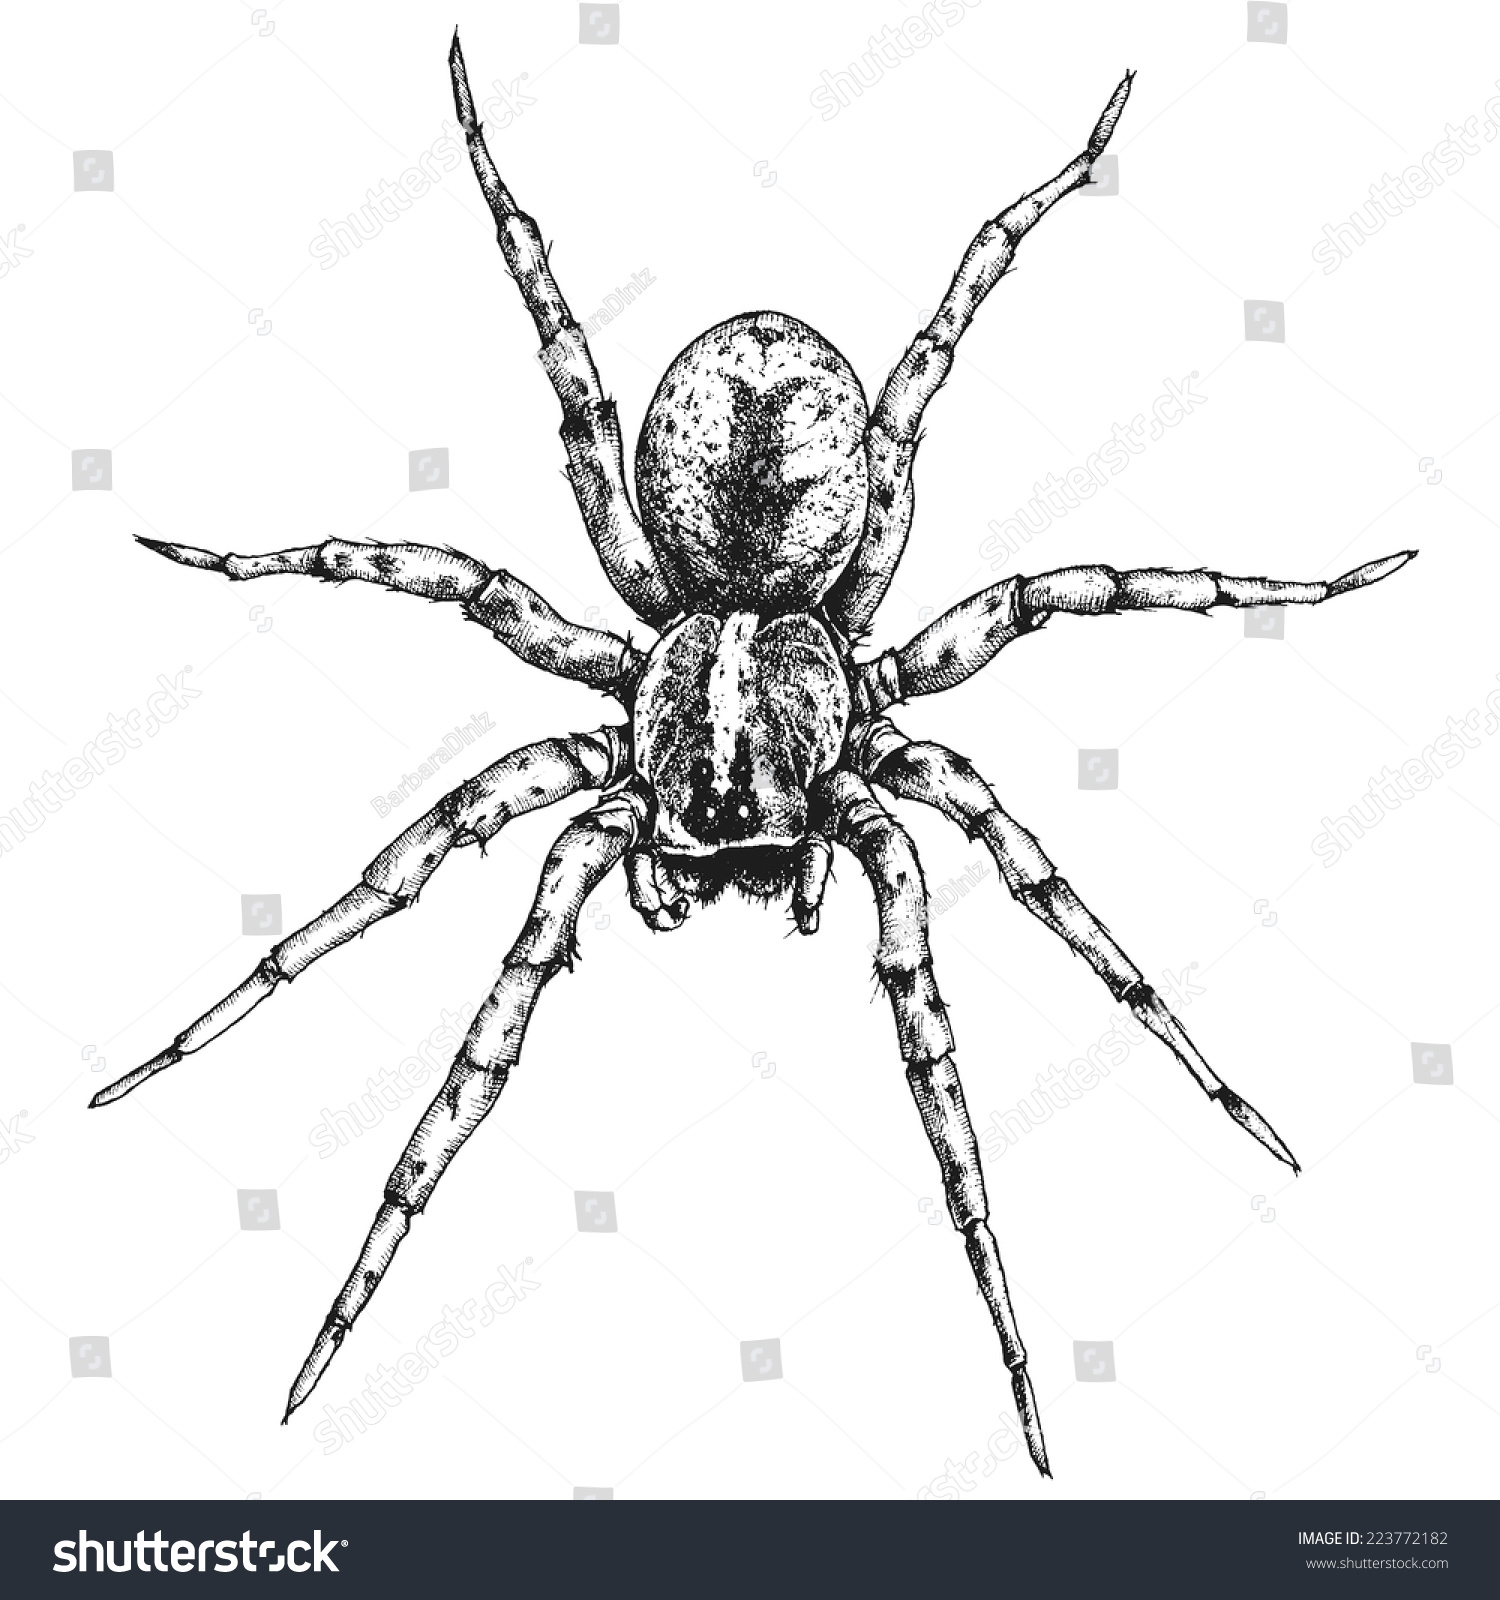 Рисунок бразильского странствующего паука